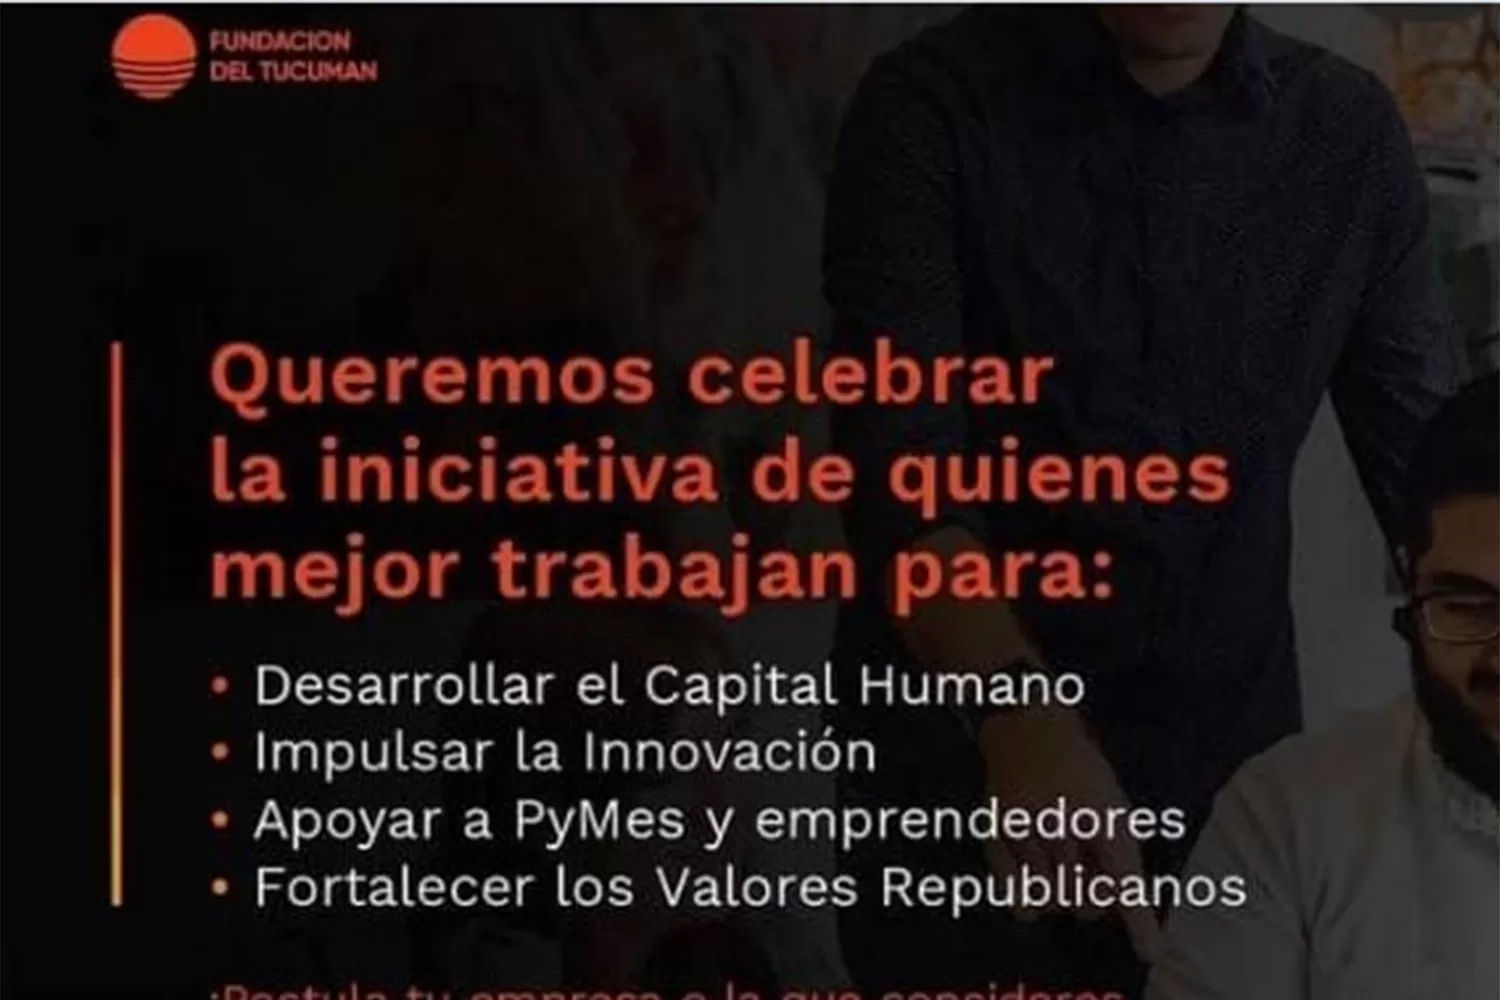 Fundación del Tucumán y un encuentro que promete grandes reconocimientos